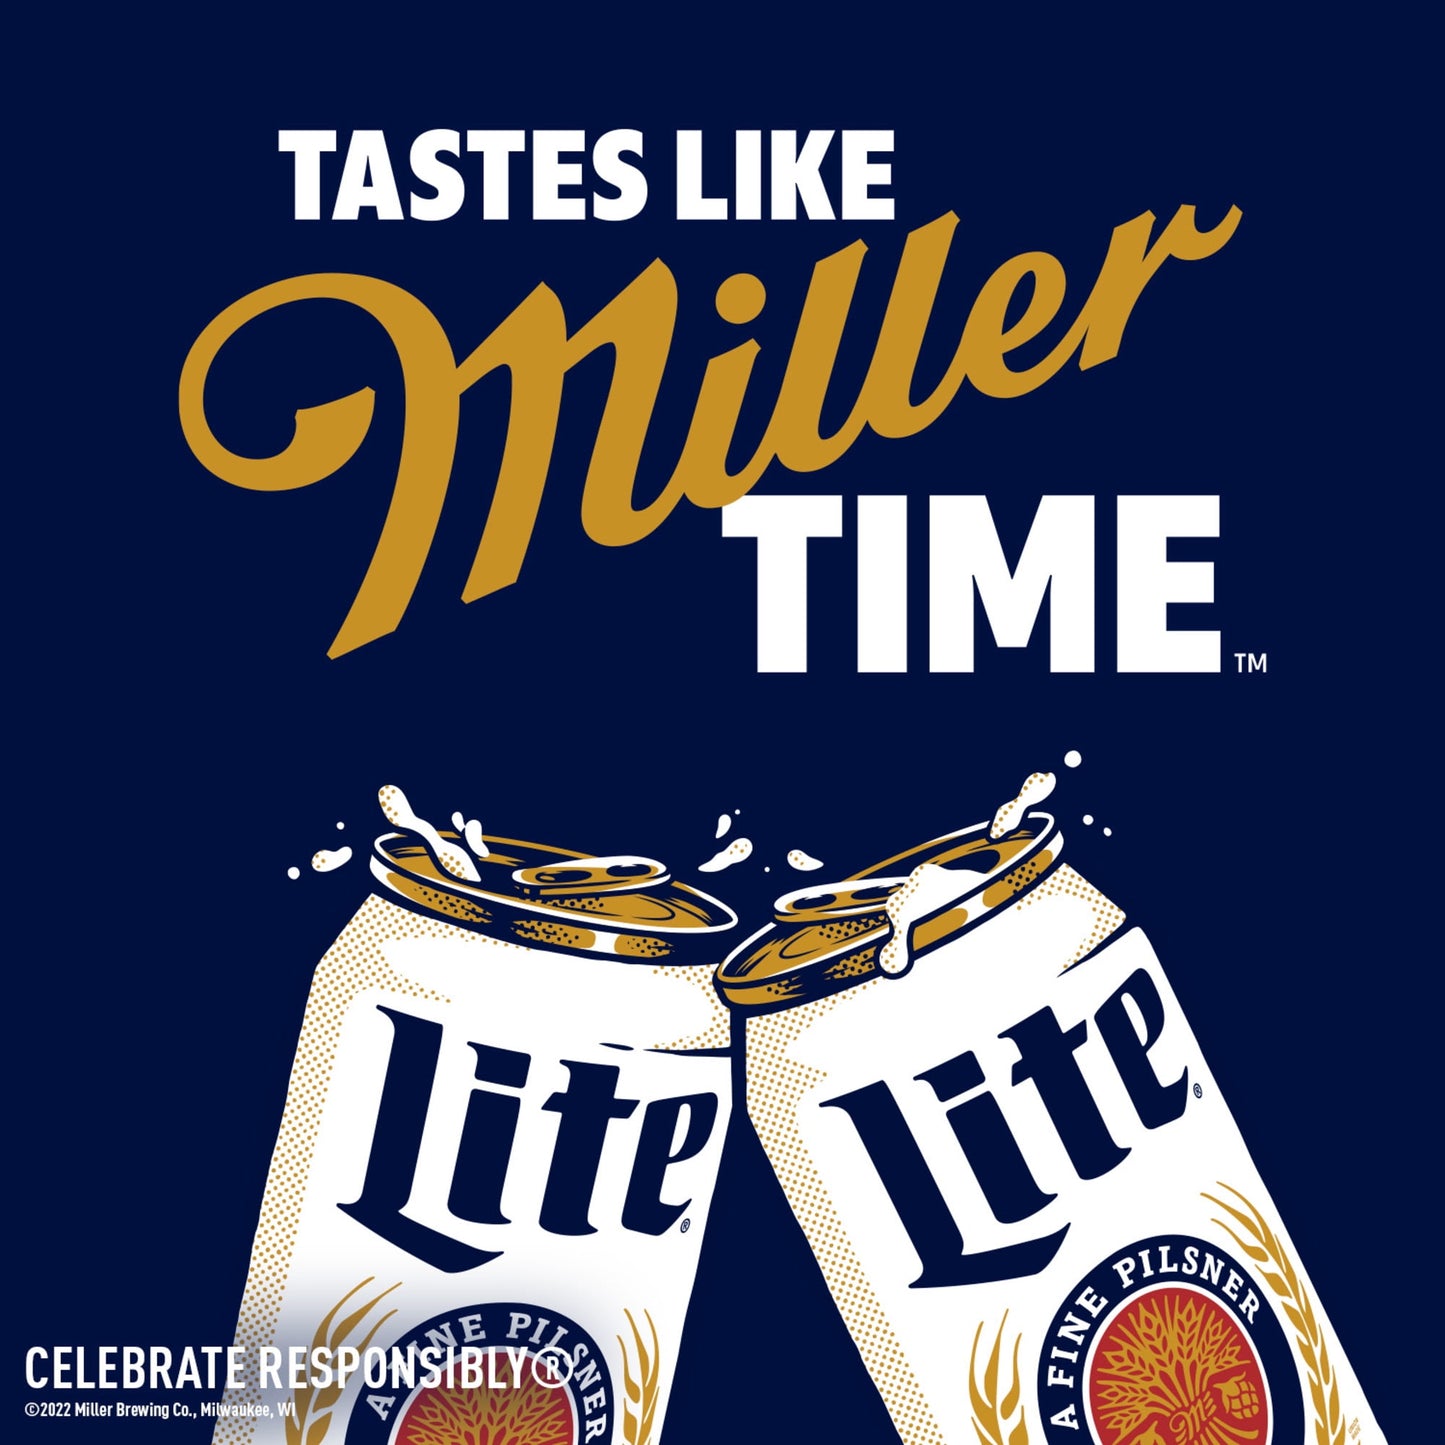 Miller Lite Lager Beer, 6 Pack, 12 fl oz Bottles, 4.2% ABV